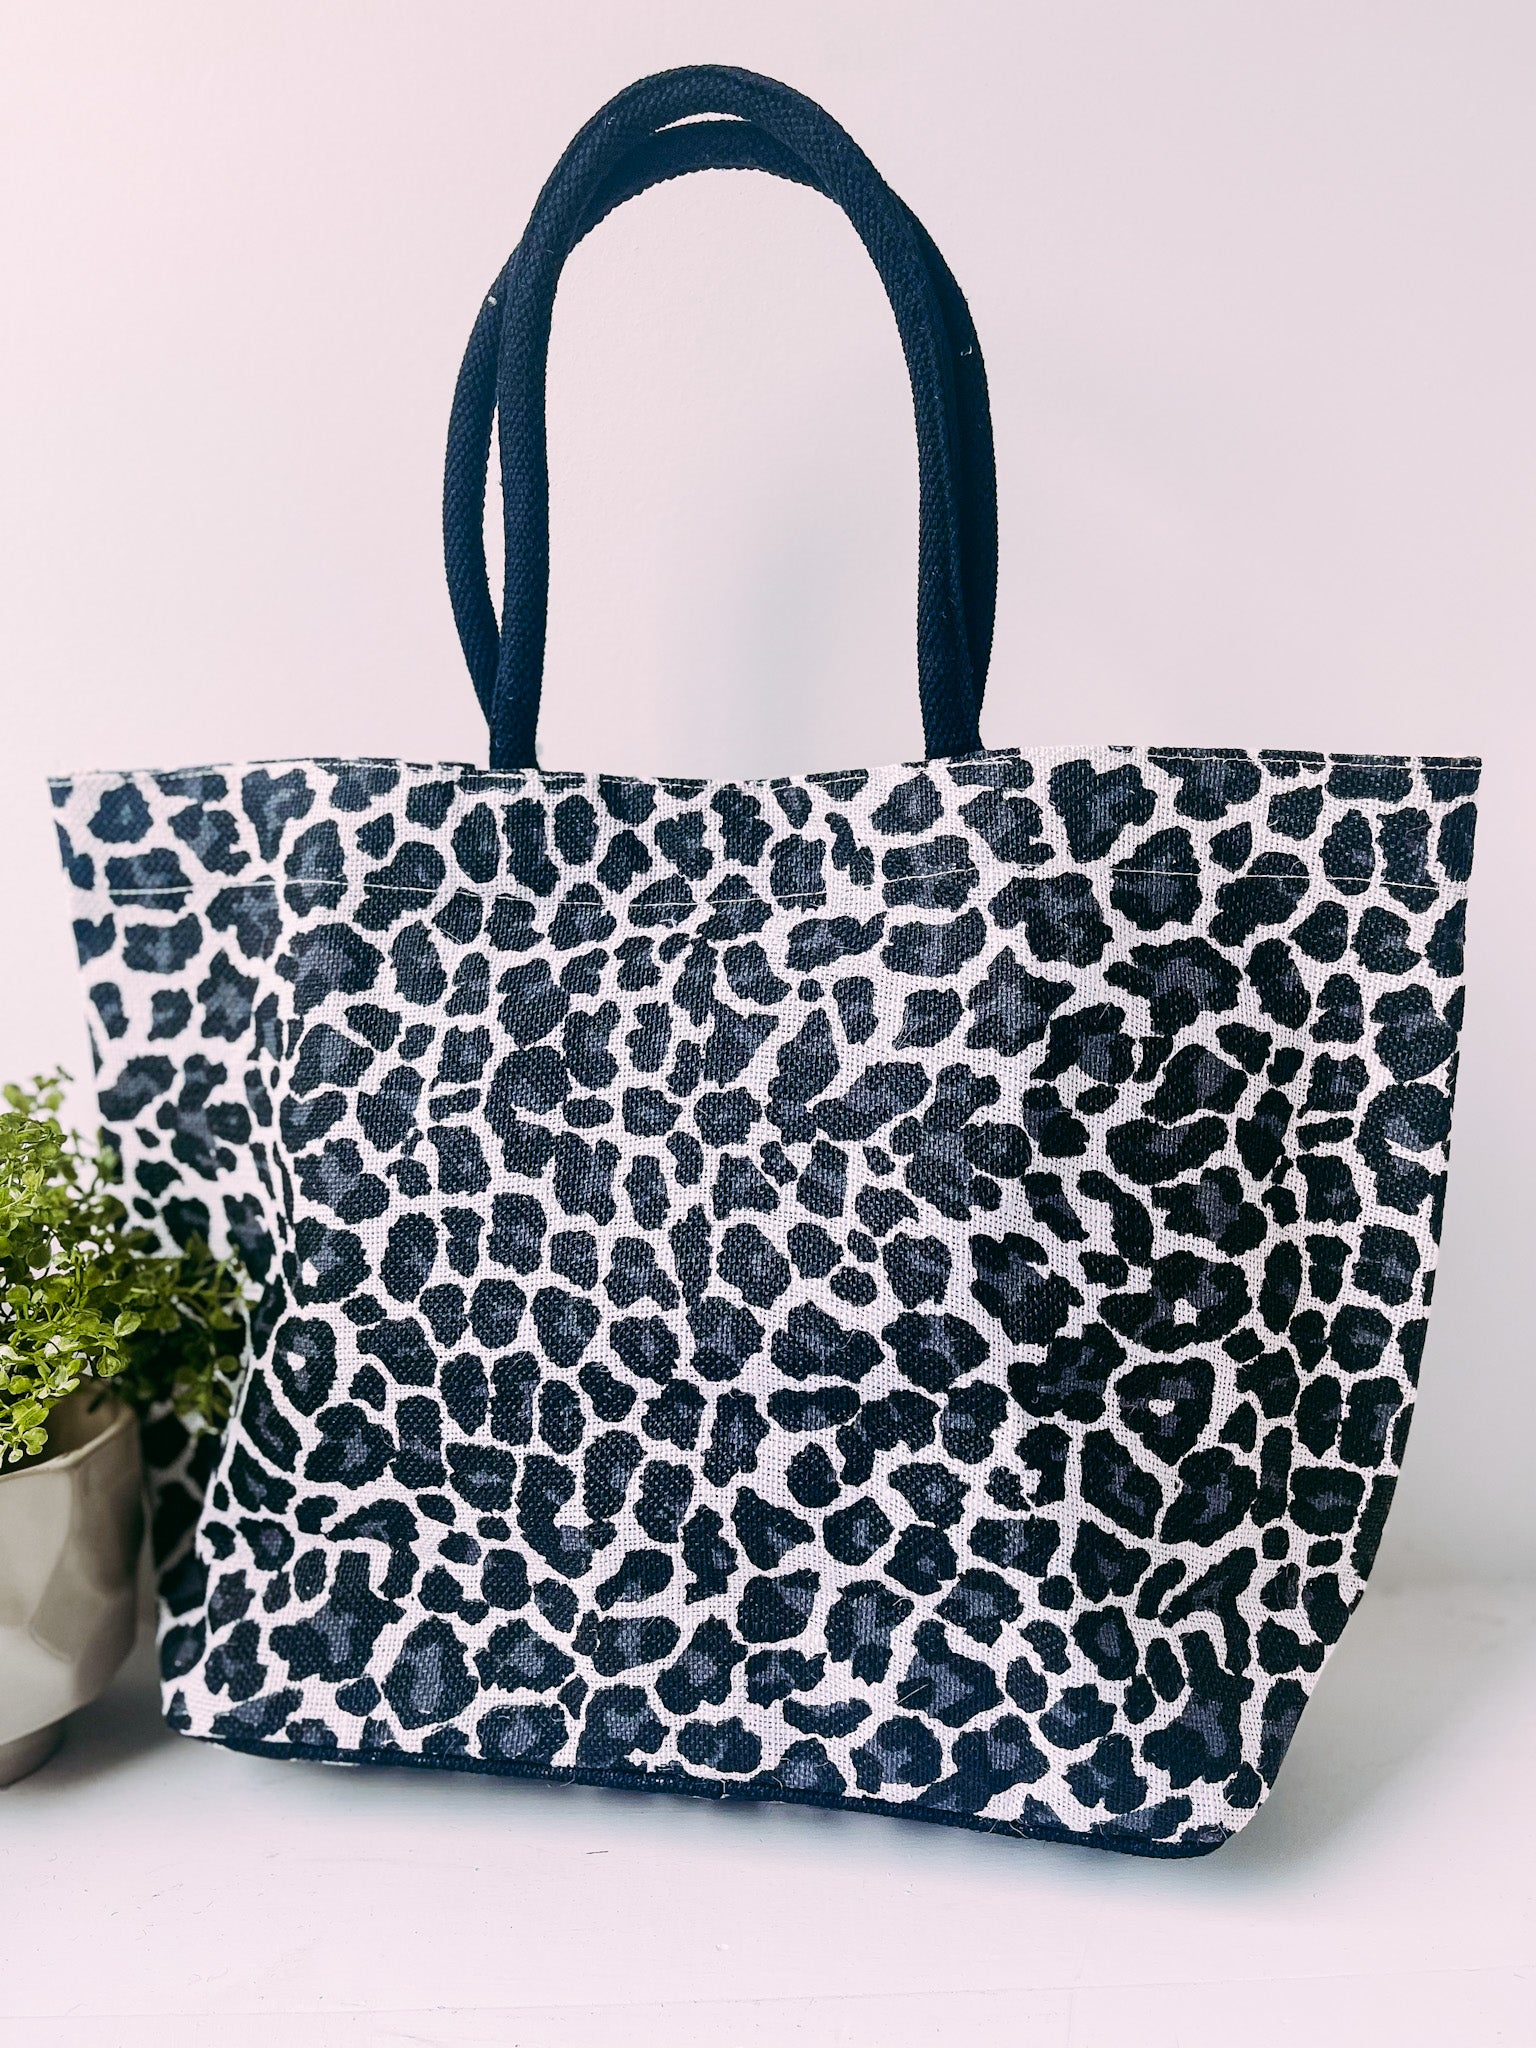 Mia Jute Tote Bag in Leopard- Black